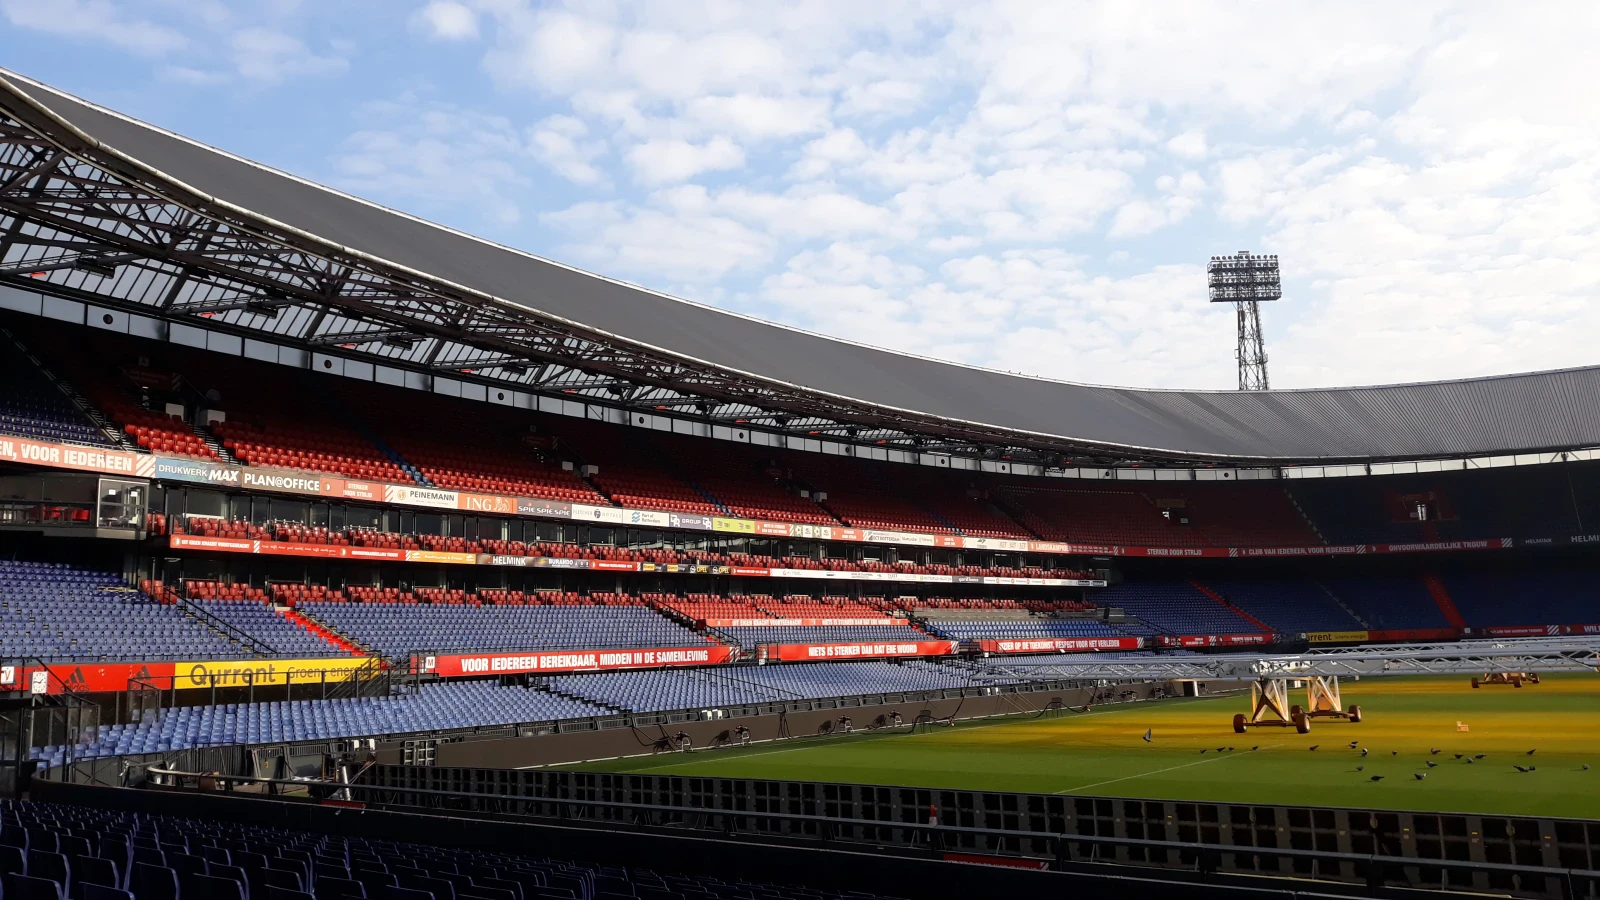 Tijdstip wedstrijd tussen Feyenoord en FC Utrecht blijft staan op 12:15 uur, verzoek om later te spelen afgewezen